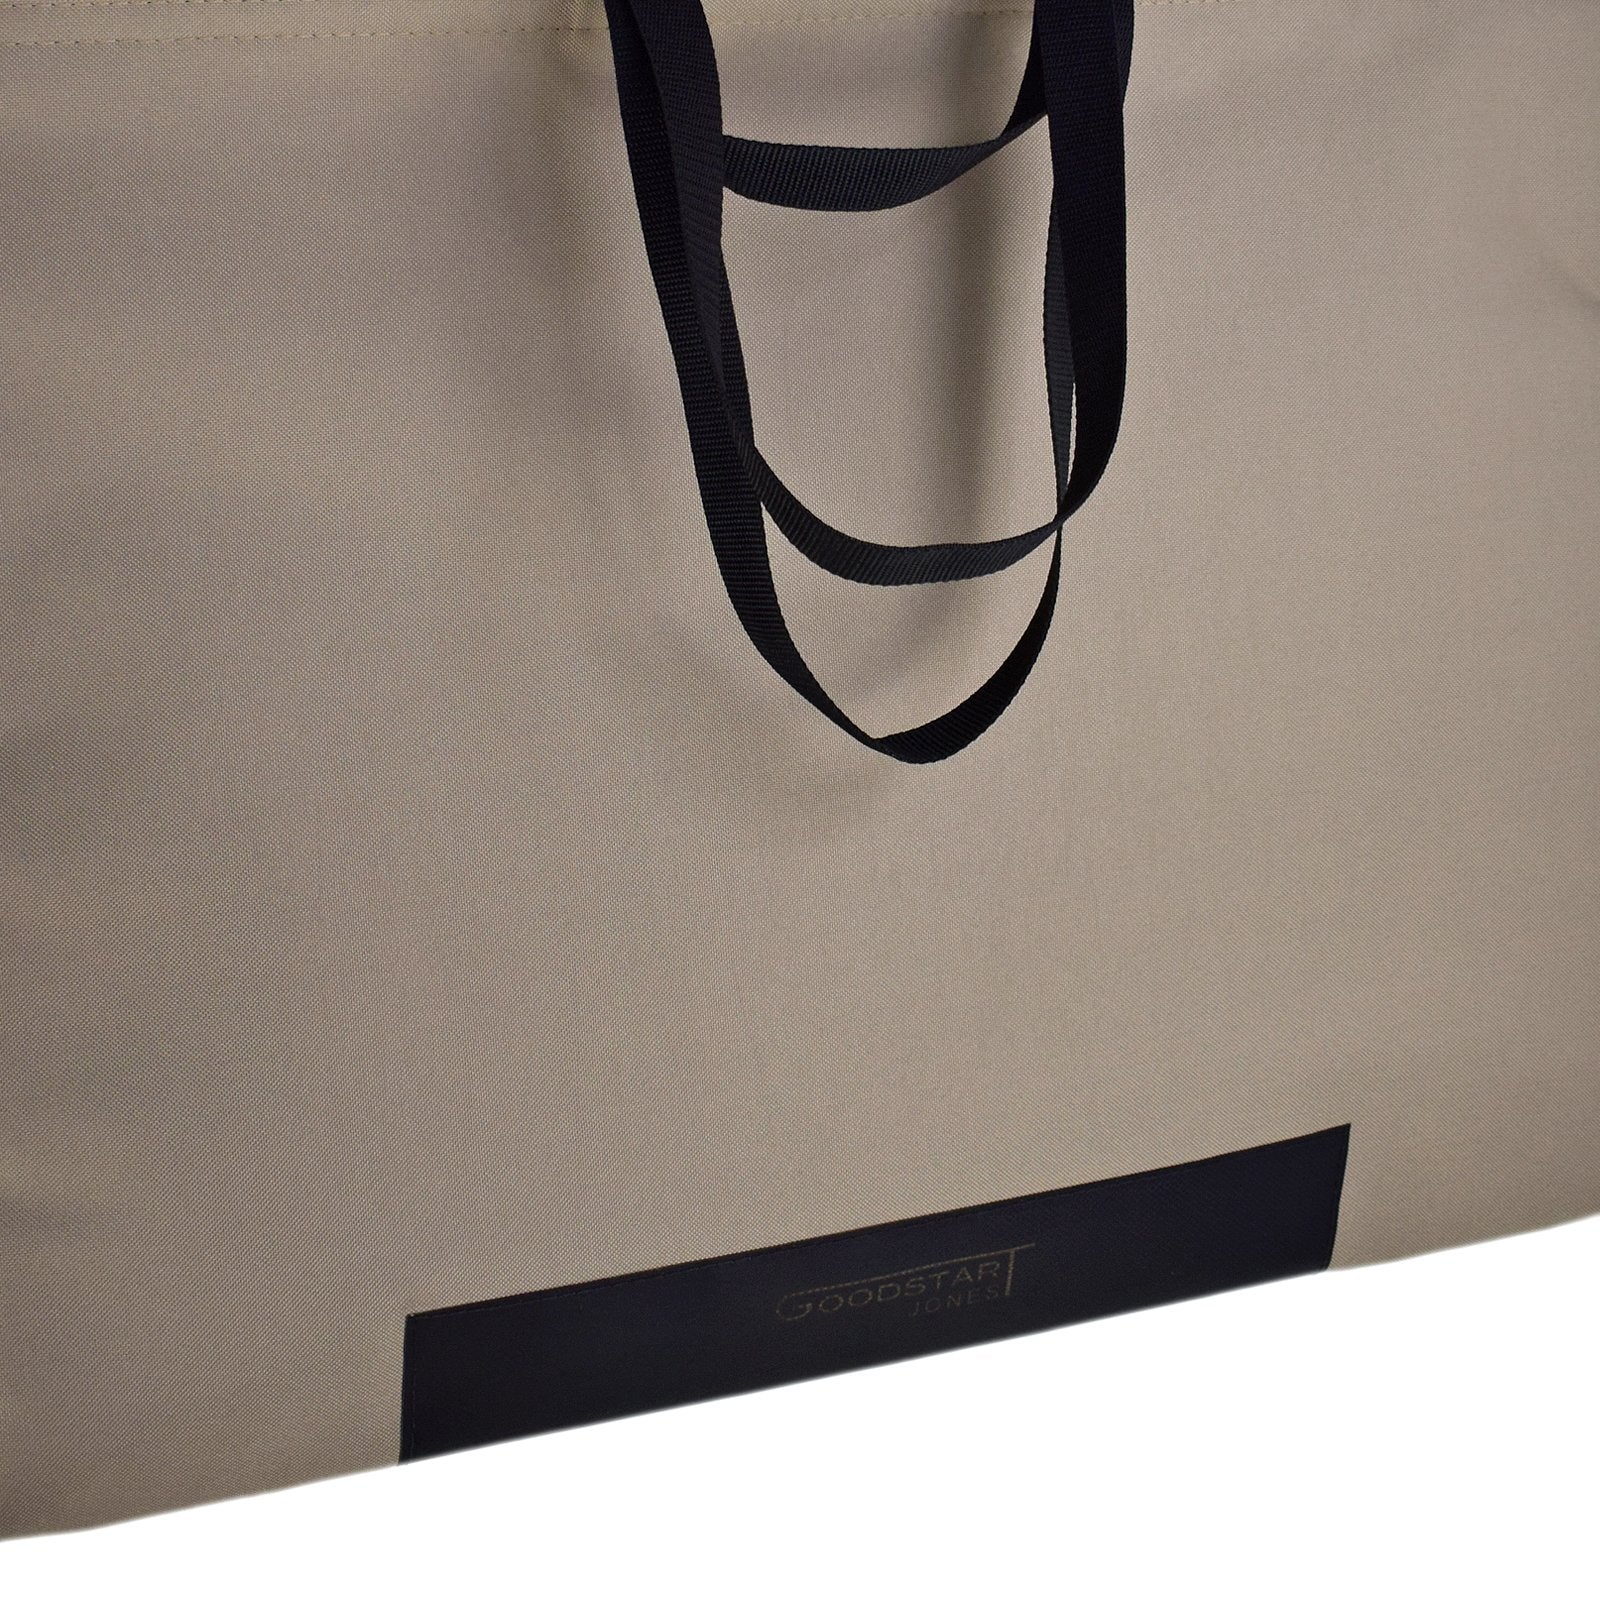 close up of Goodstart Jones branding on large tote bag shopper